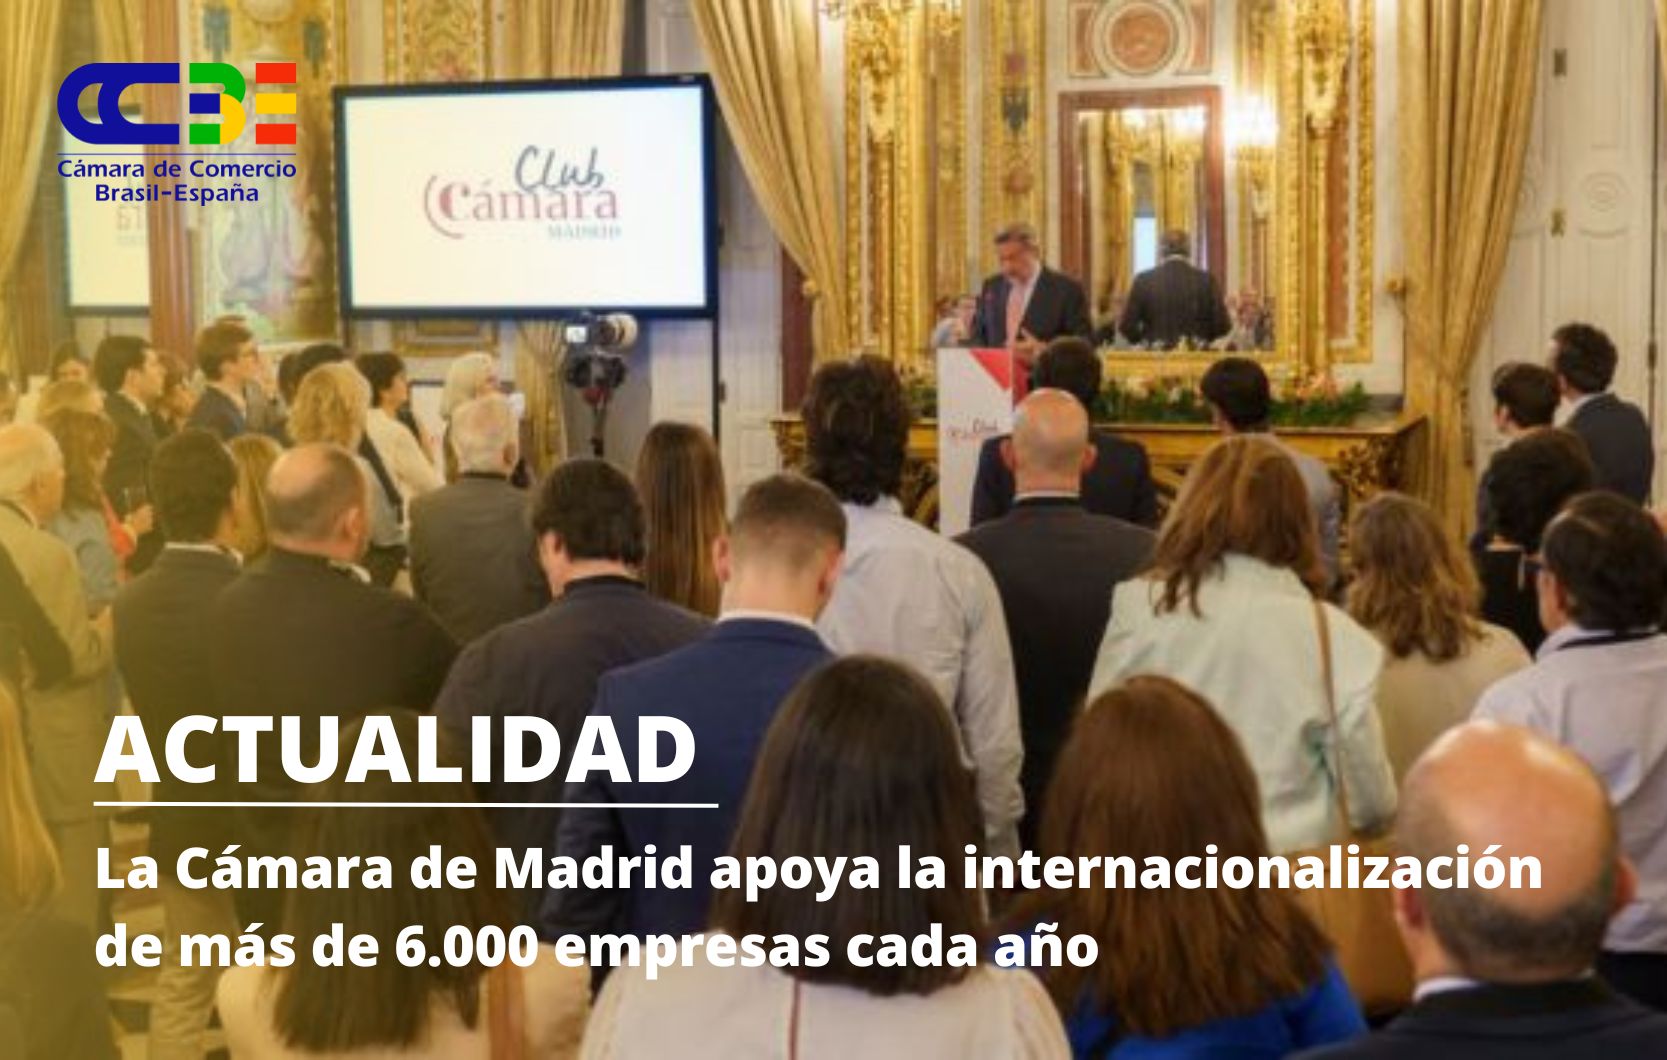 La Cámara de Madrid apoya la internacionalizacion de más de 6.000 empresas cada año